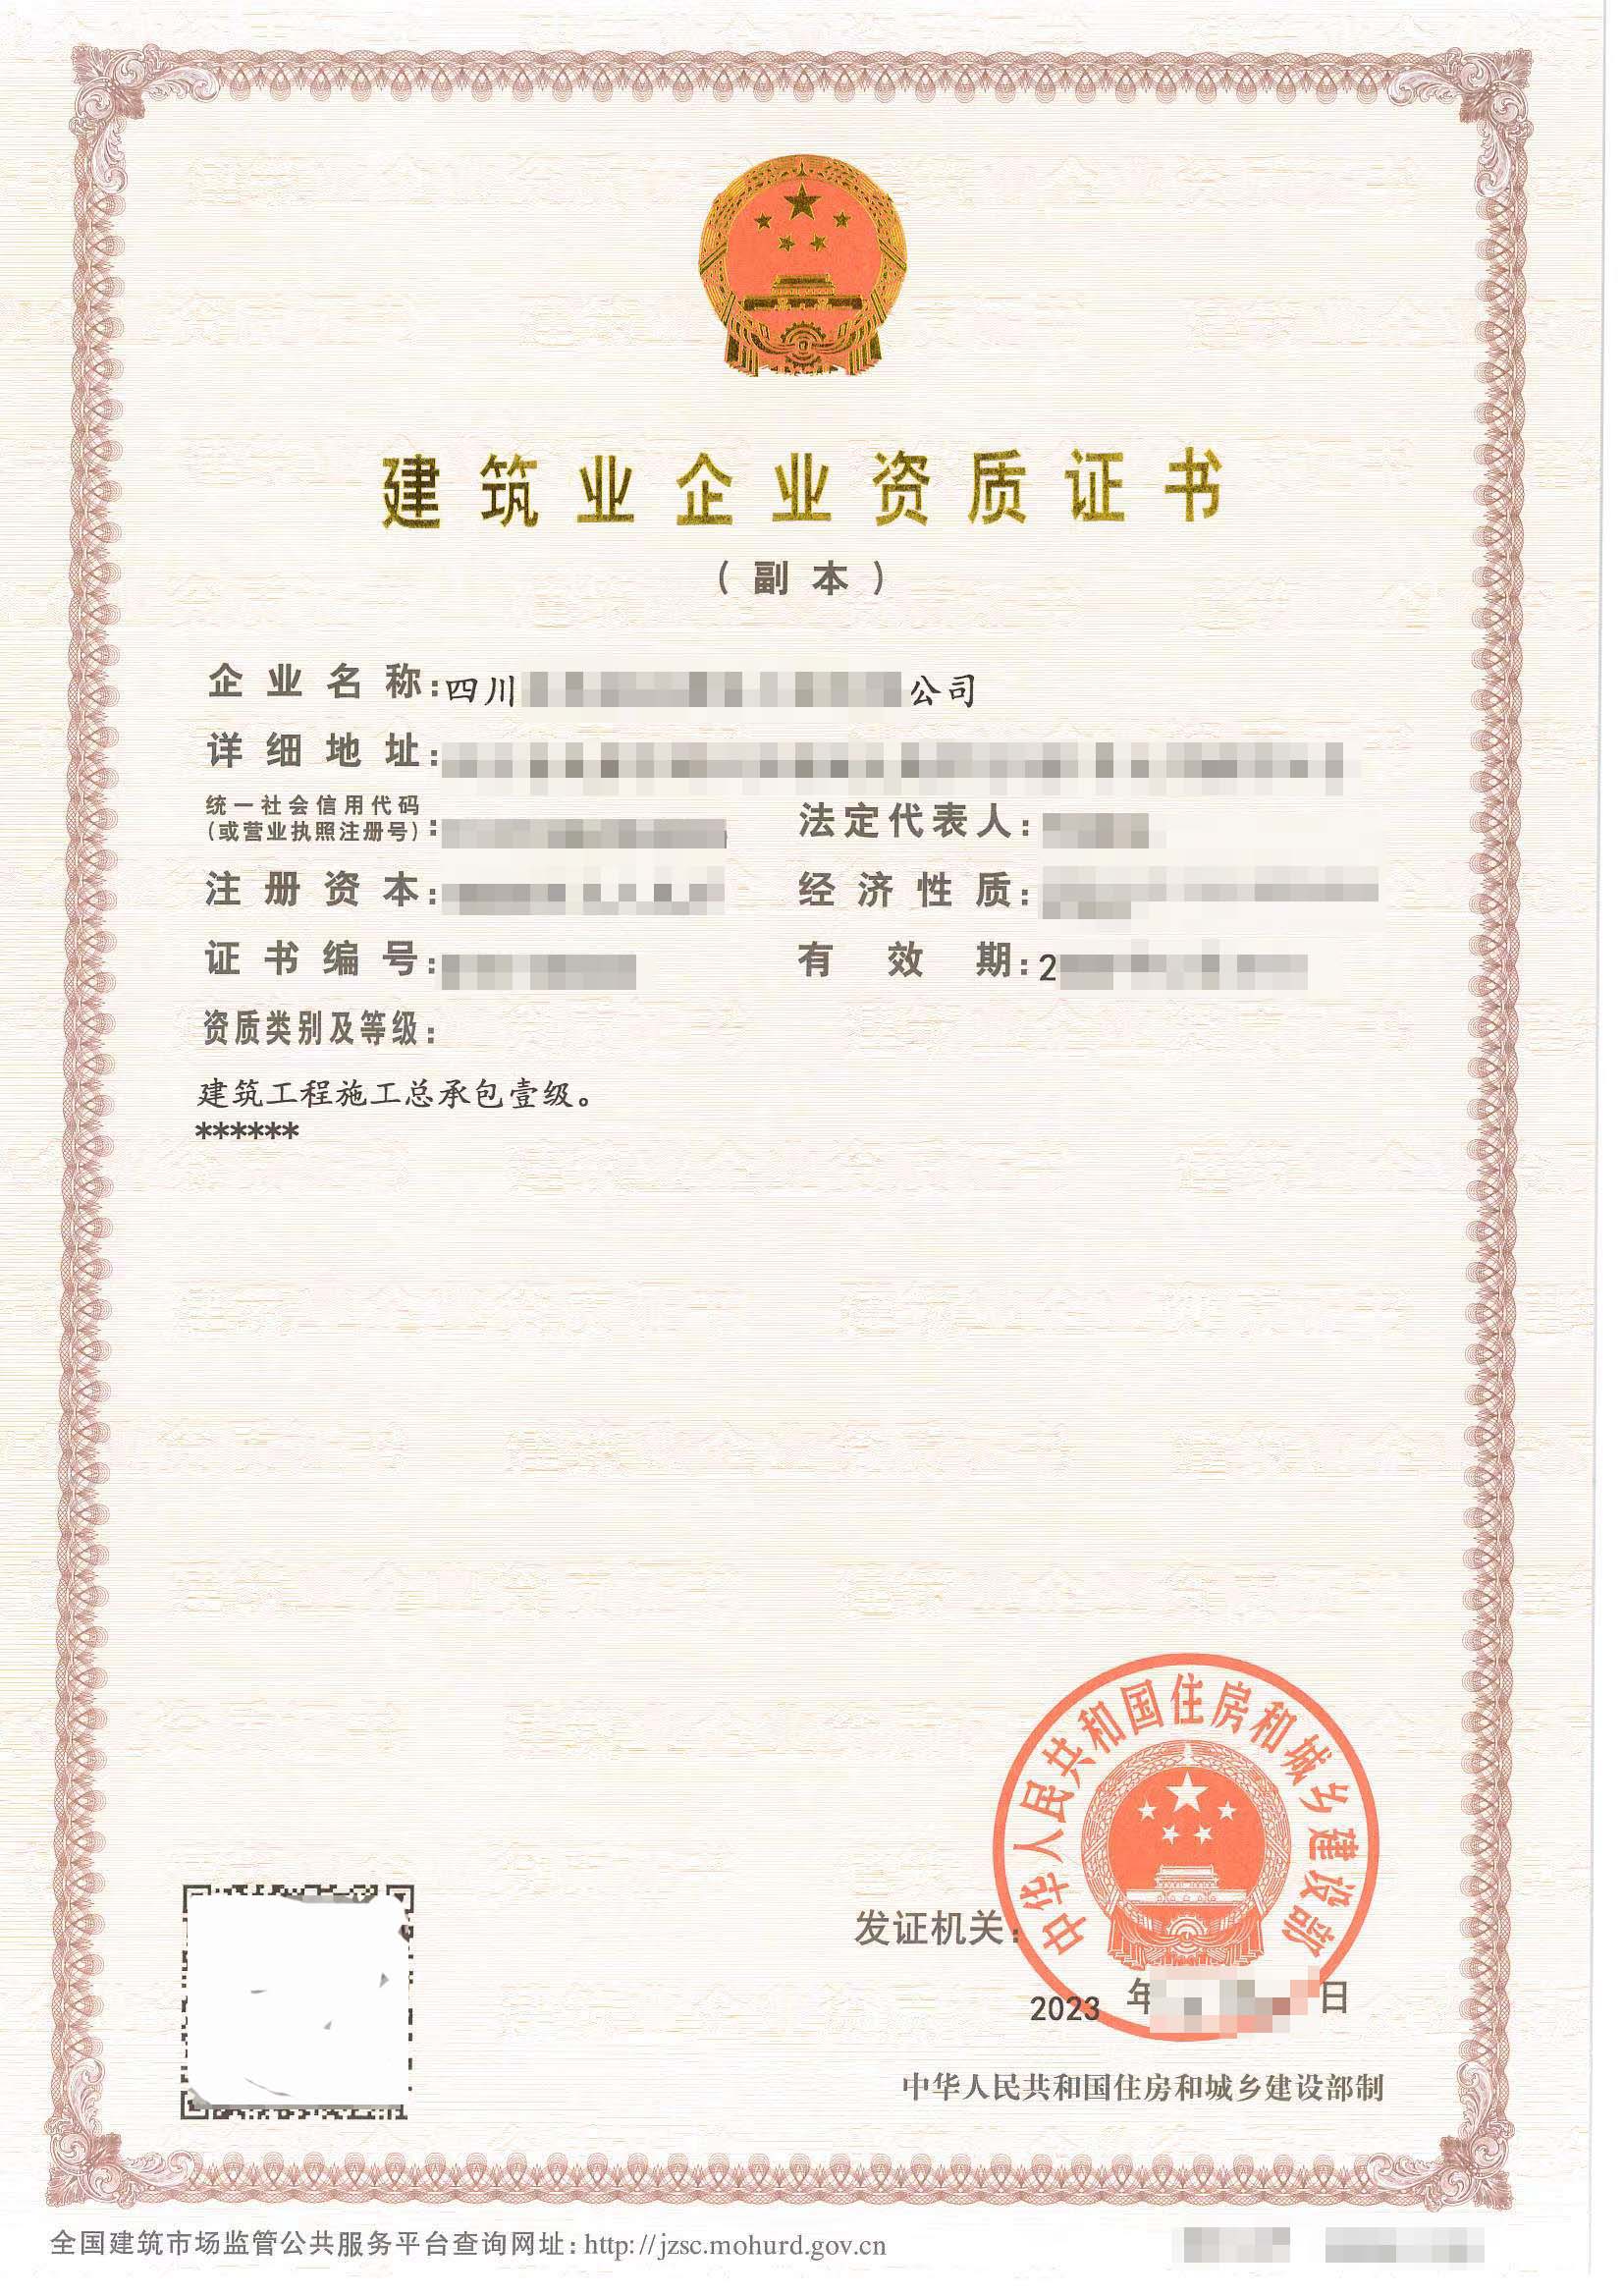 转让 杭州动漫网文ICP、EDI许可证的公司